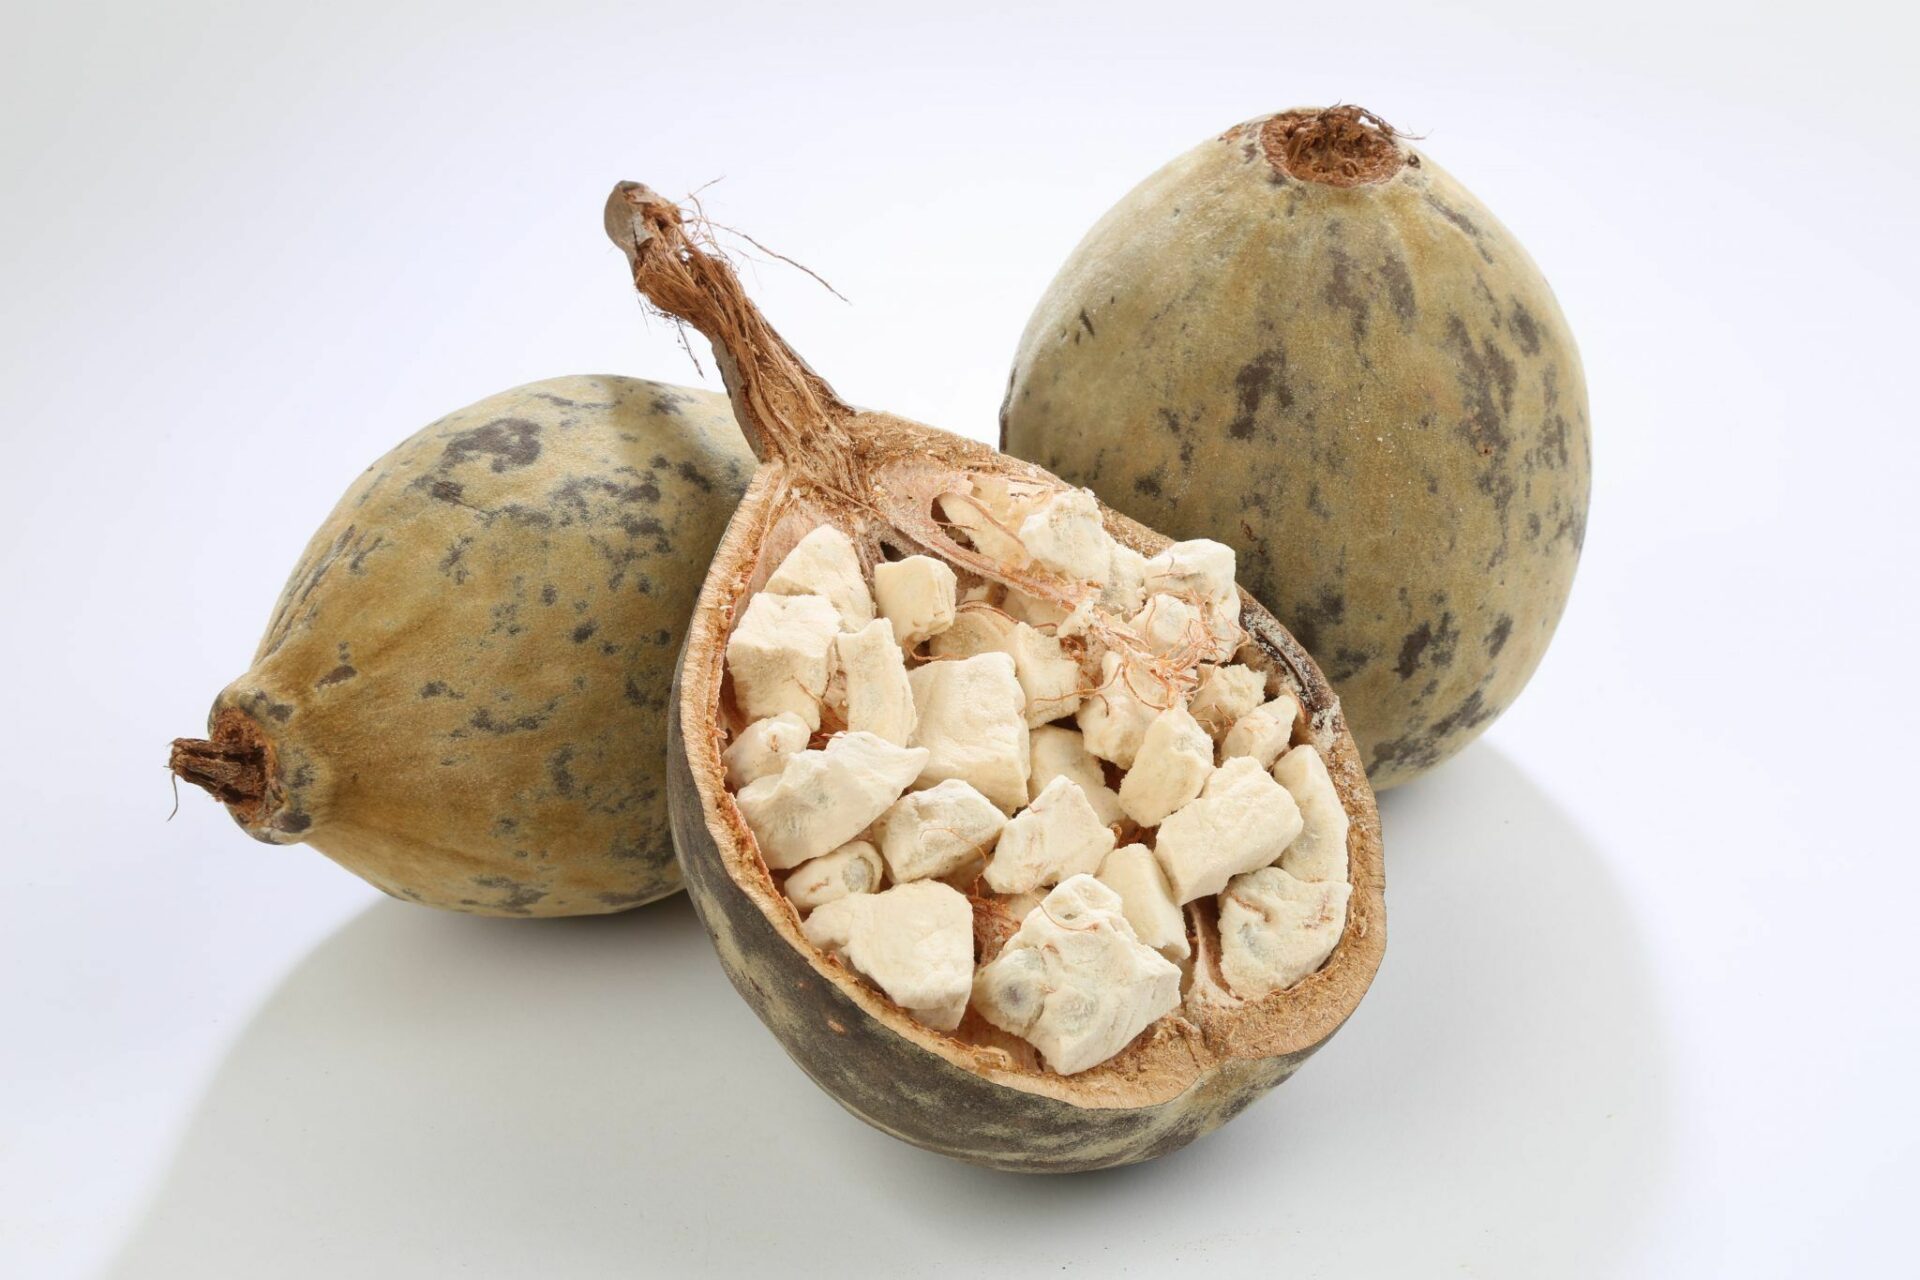 Baobab Fruit Powders Market